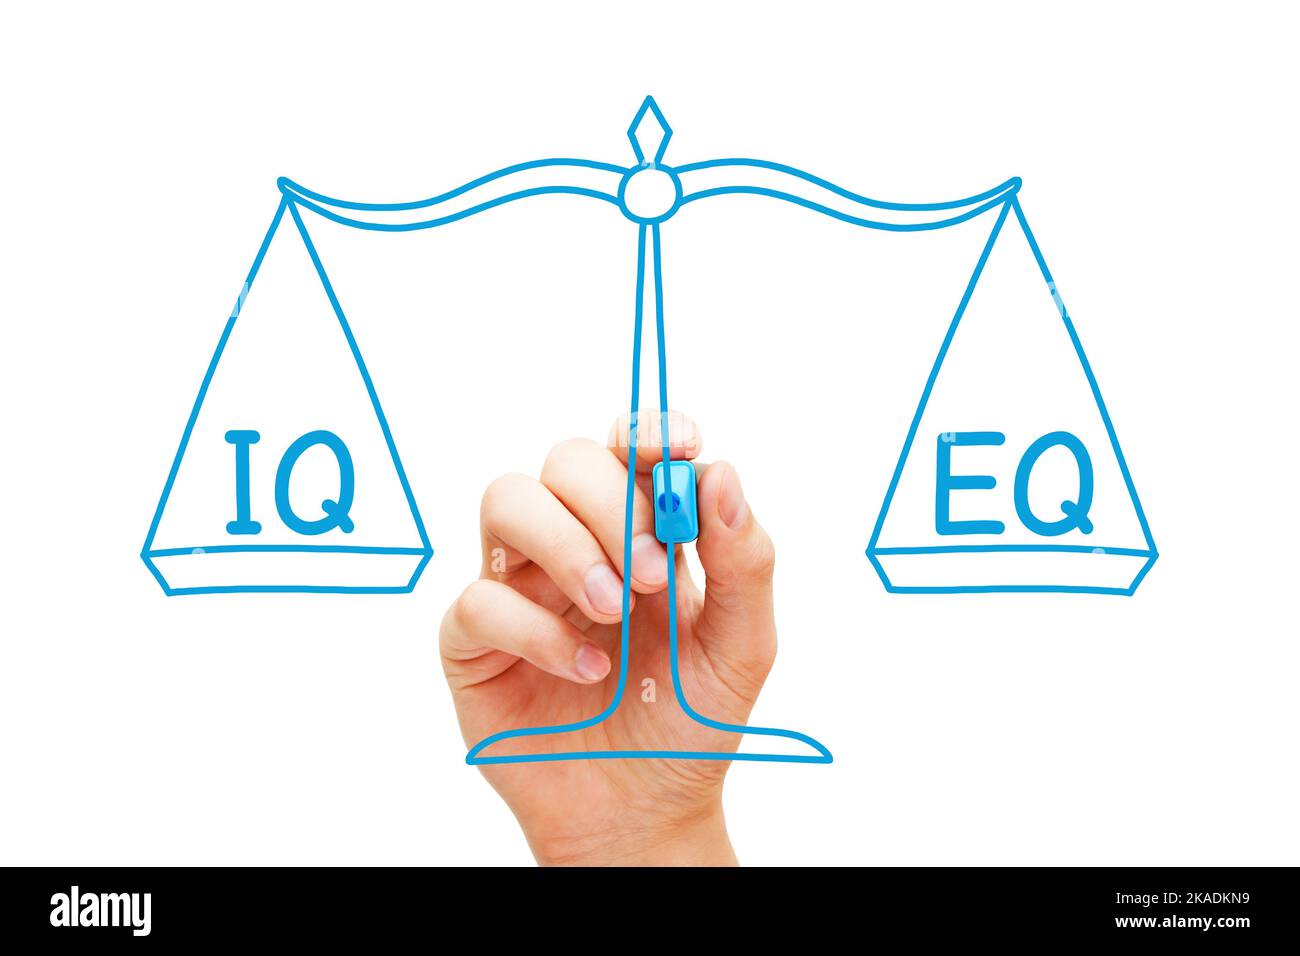 Handzeichnung eines Konzepts über den IQ-Intelligenzquotienten und den EQ-Quotienten für emotionale Intelligenz, gewichtet auf der Skala. Stockfoto